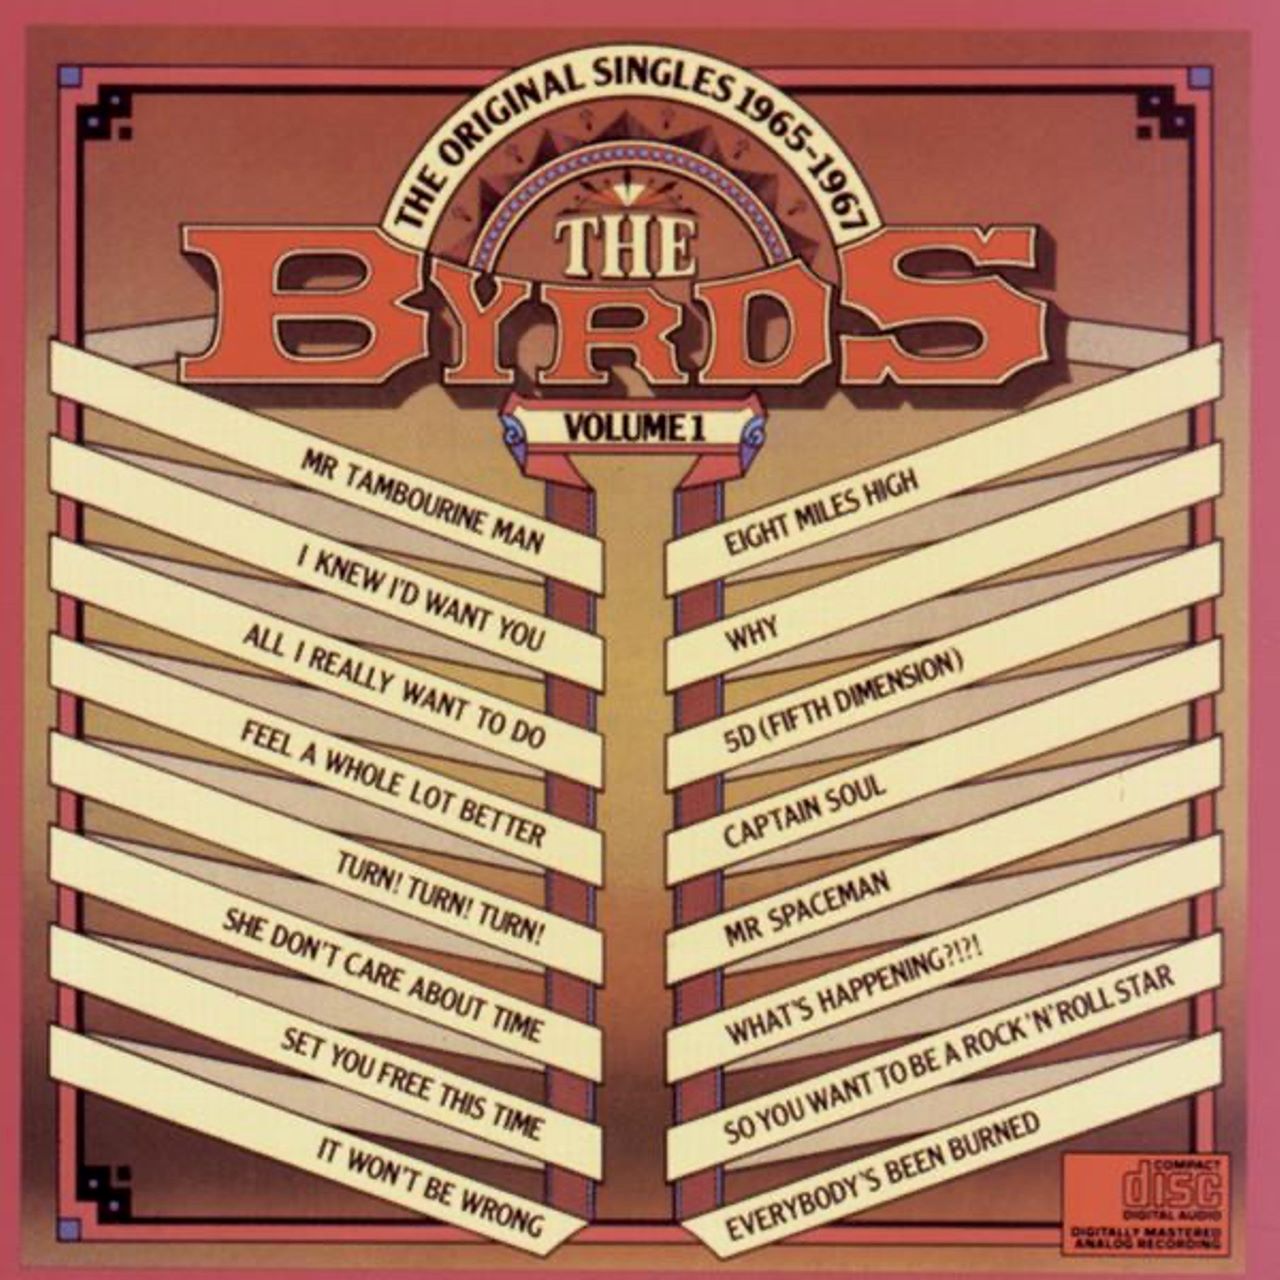 Byrds – The Original Singles 1965-1967, vol. 1 cover album